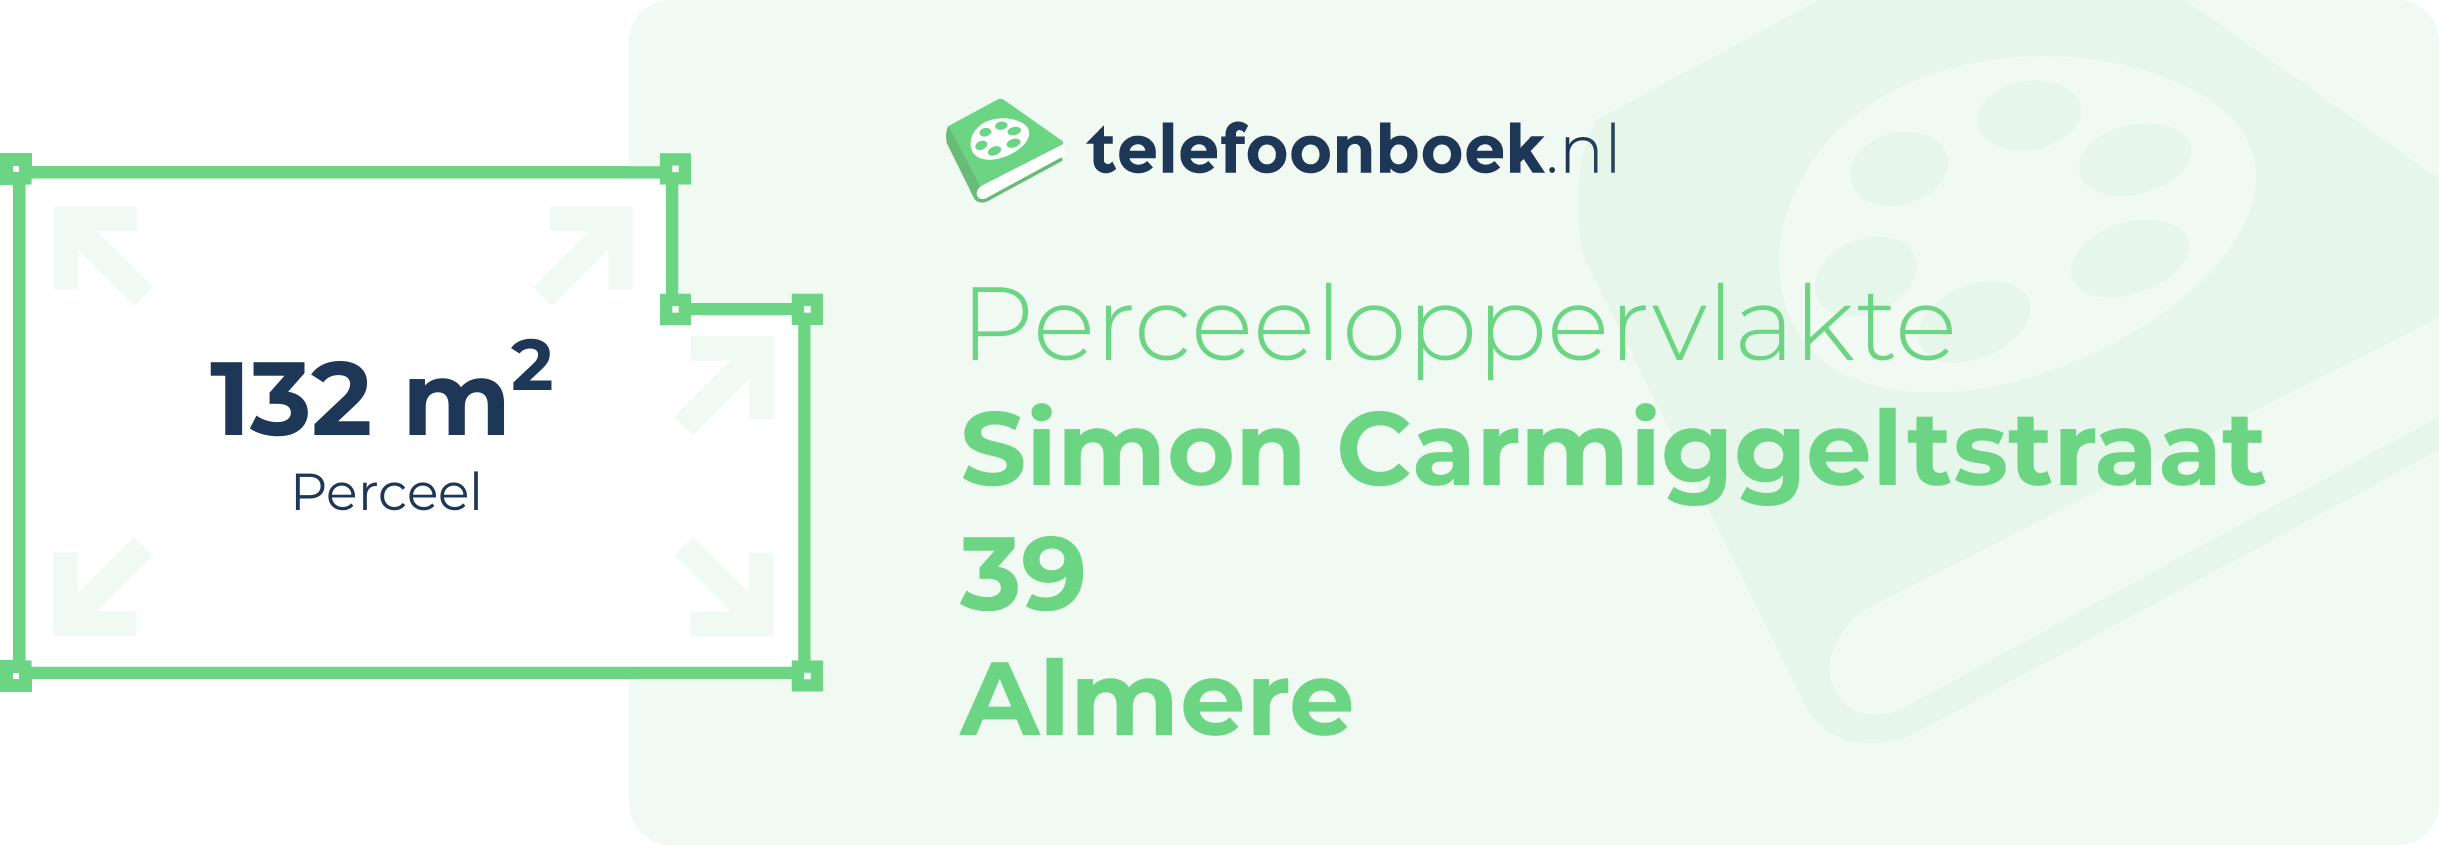 Perceeloppervlakte Simon Carmiggeltstraat 39 Almere